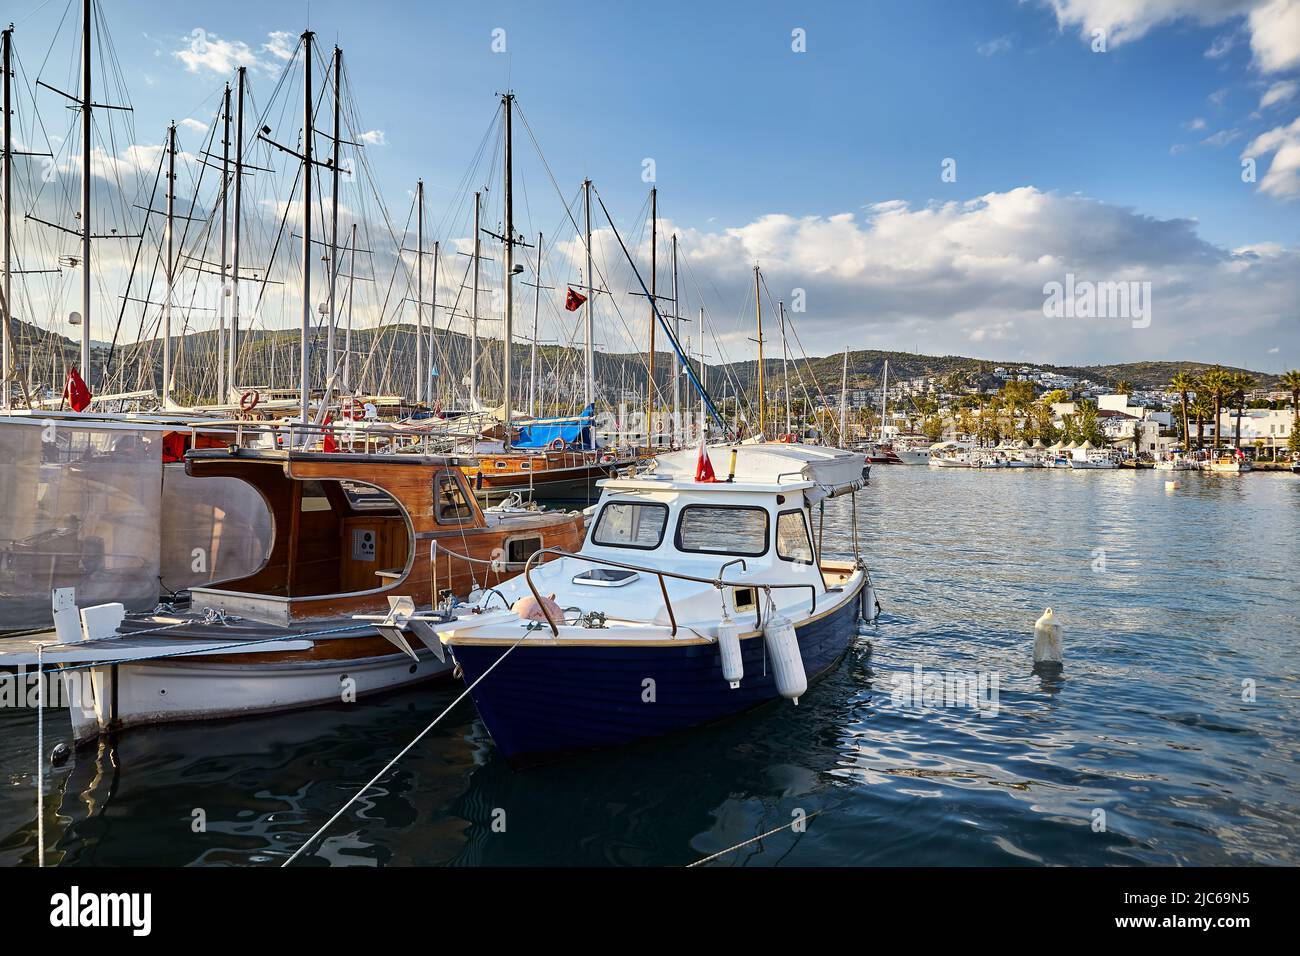 Vista de la playa de Bodrum desde el Paseo Marítimo. Barcos de vela, yates en el mar Egeo con casas blancas tradicionales en las colinas en Bodrum ciudad portuaria de Turquía Foto de stock